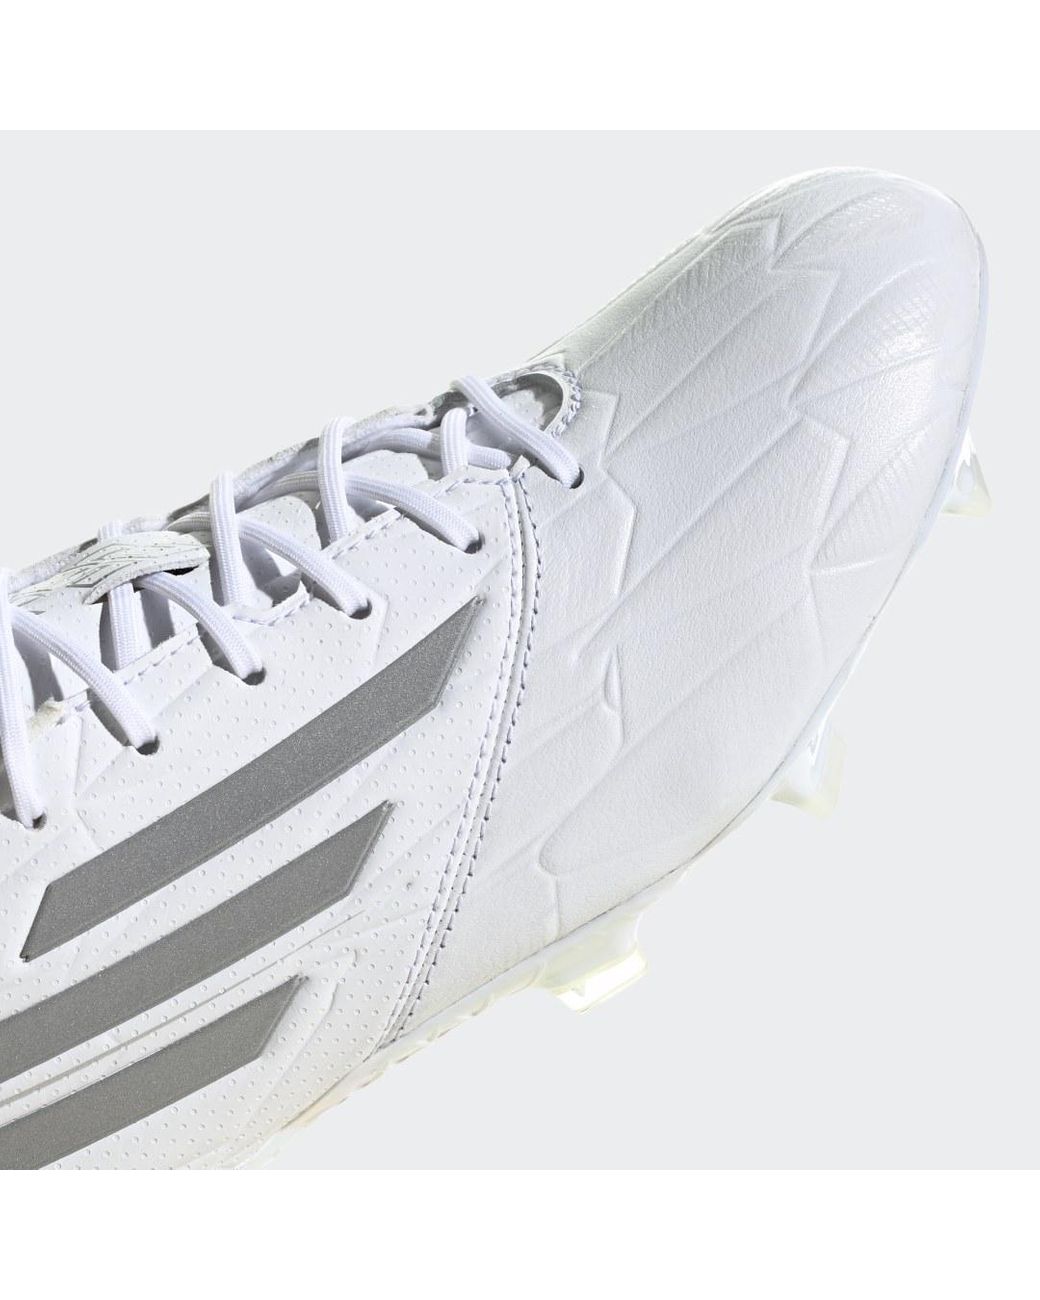 adidas F50 ADIZERO IV Leather FG Fußballschuh in Weiß | Lyst DE